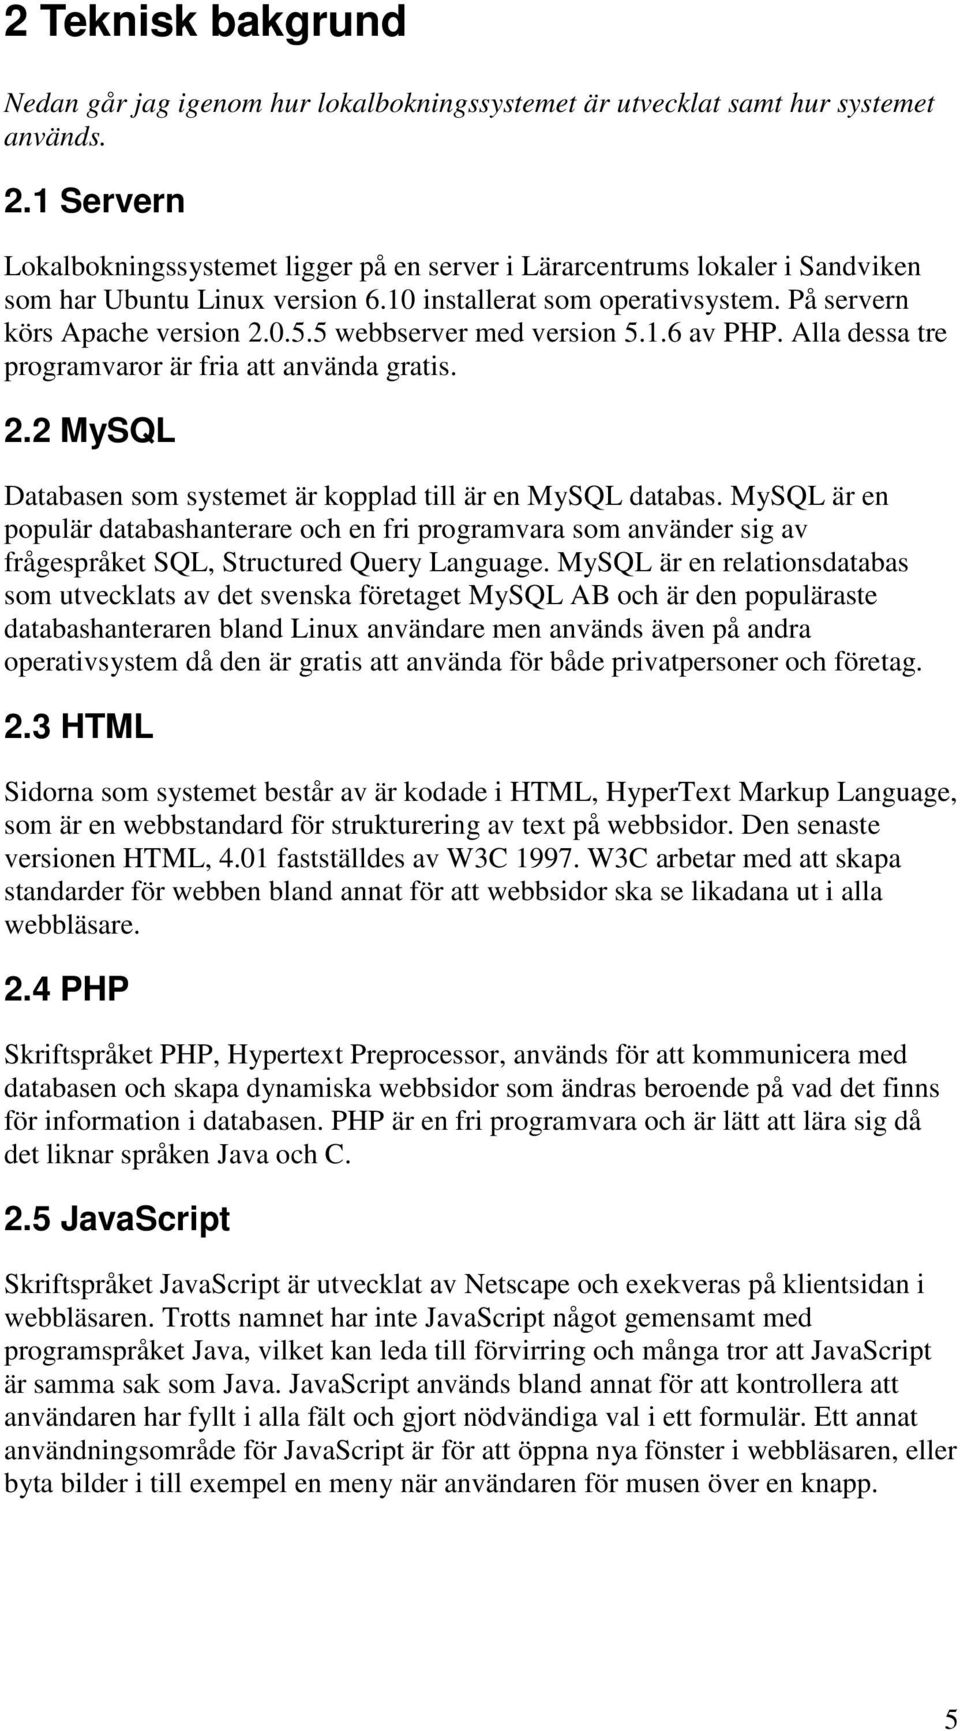 5 webbserver med version 5.1.6 av PHP. Alla dessa tre programvaror är fria att använda gratis. 2.2 MySQL Databasen som systemet är kopplad till är en MySQL databas.